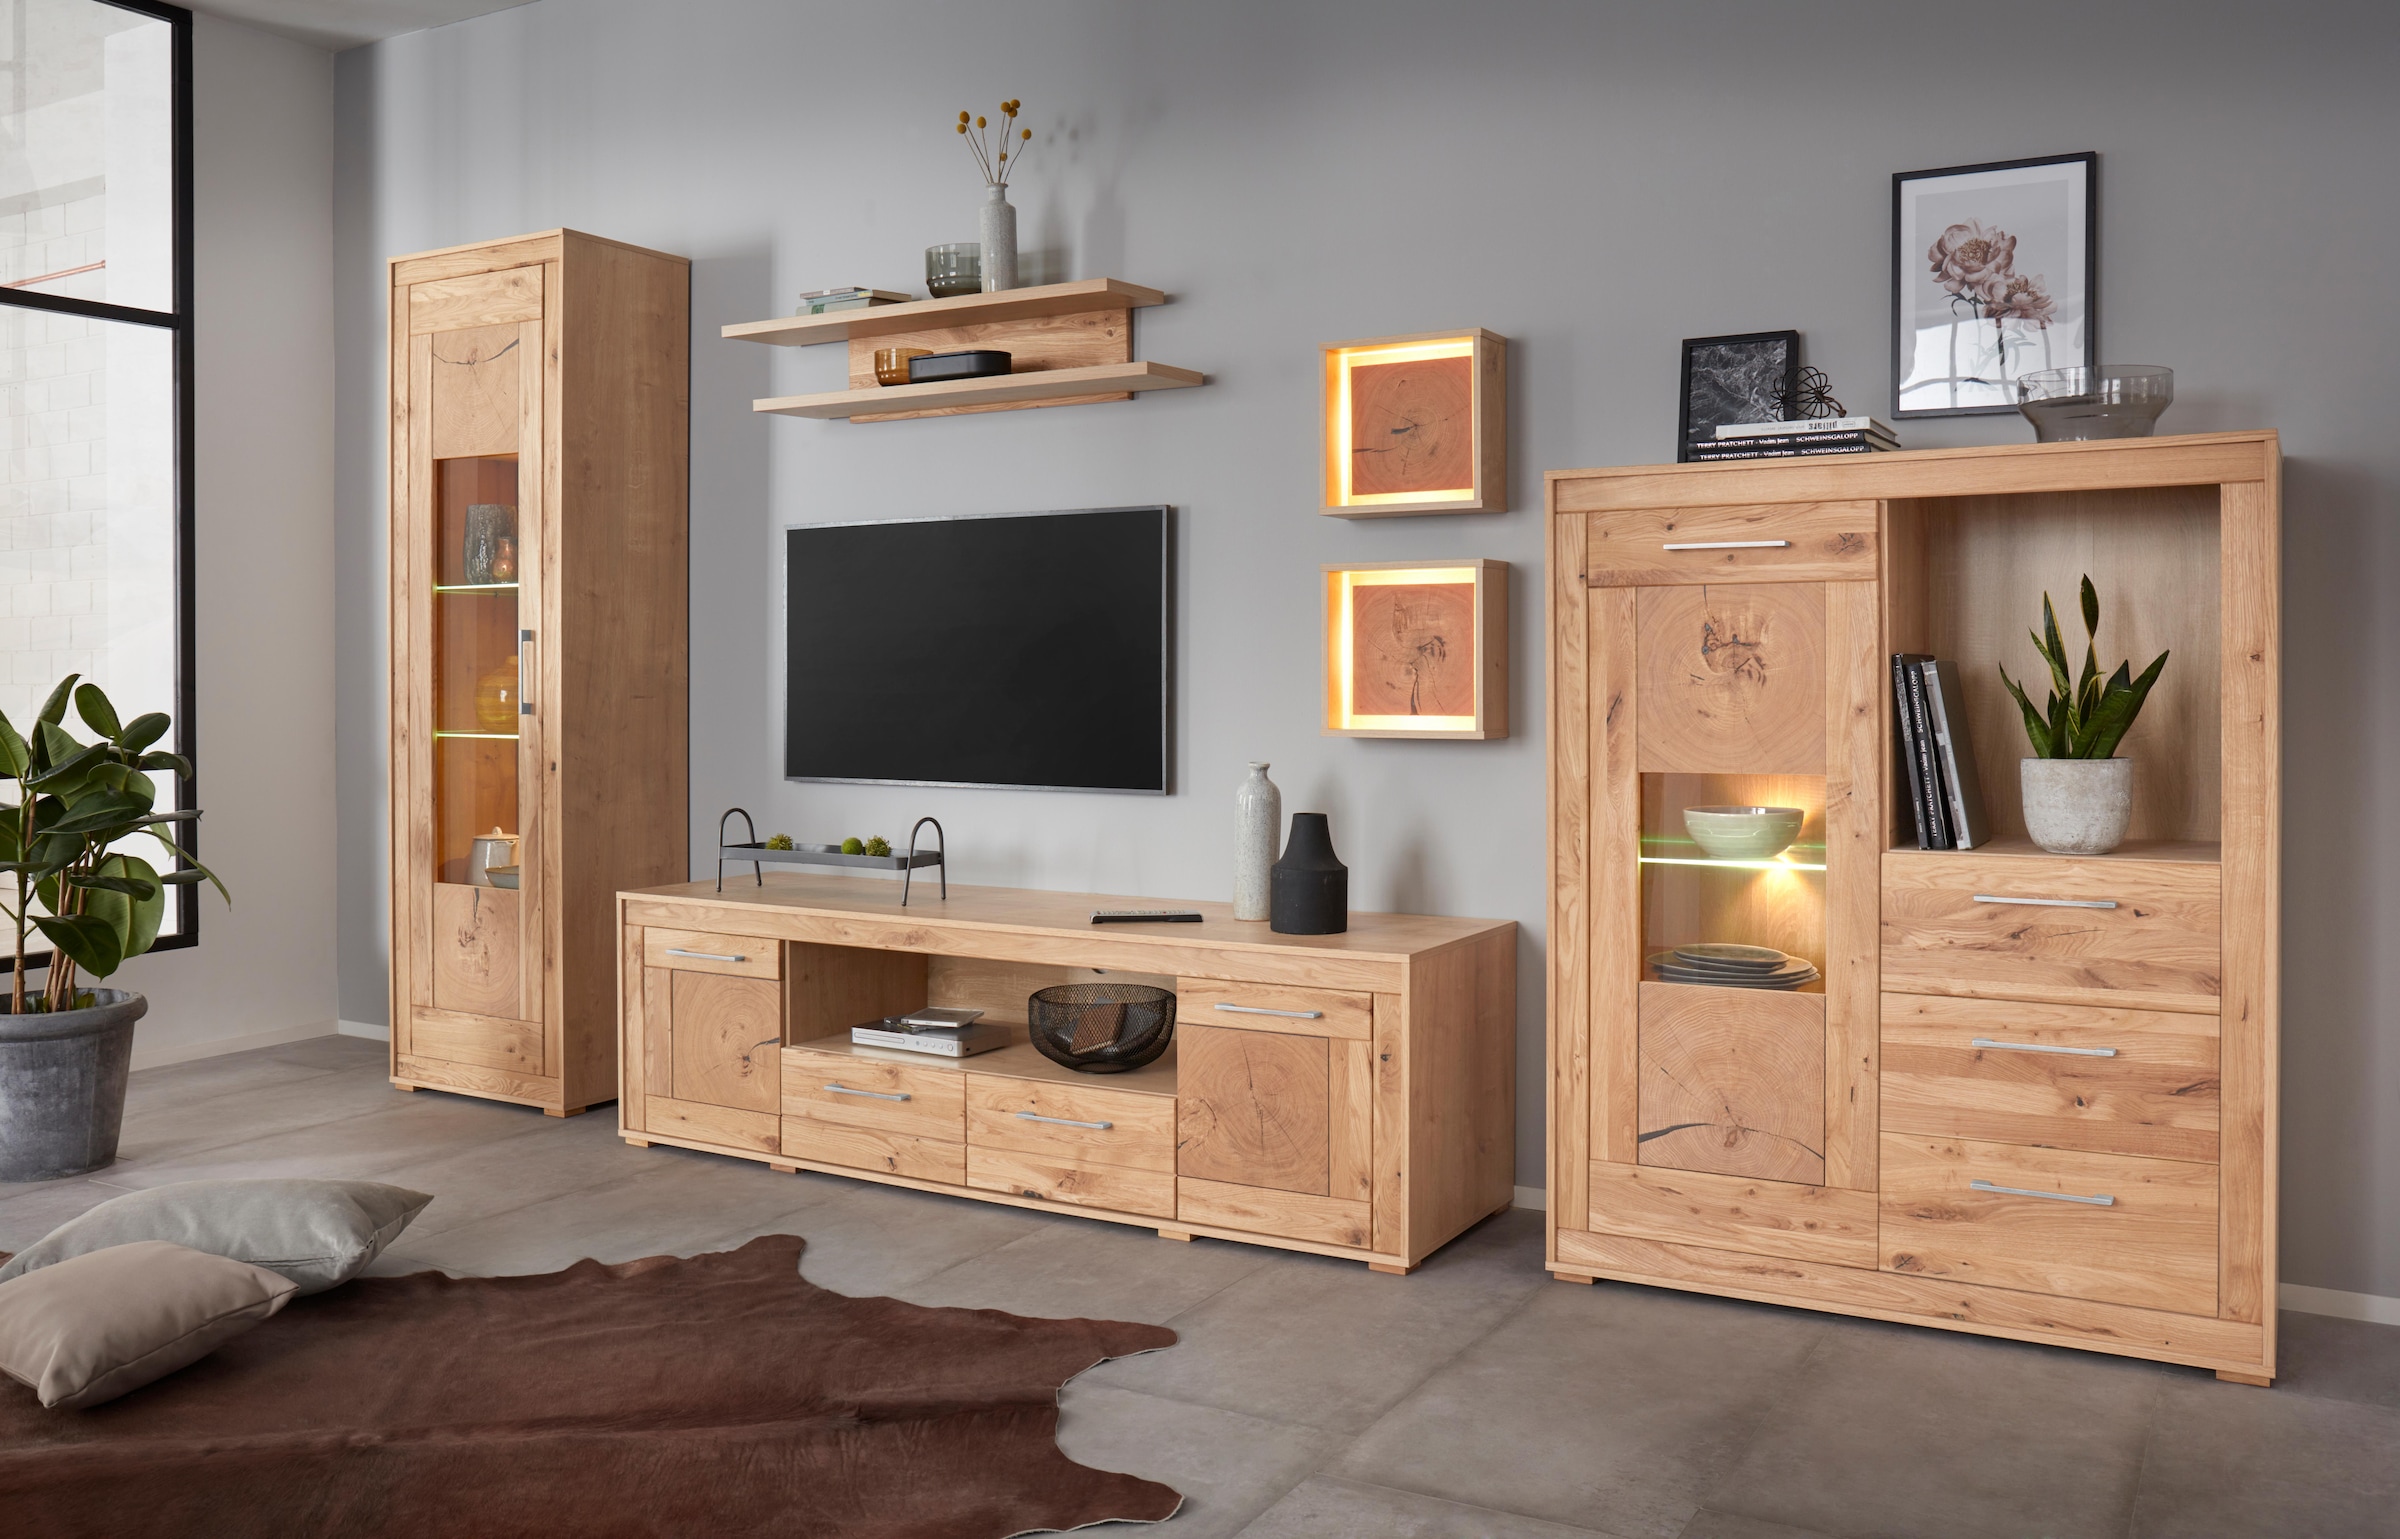 VOGL bequem Wandboard Möbelfabrik kaufen